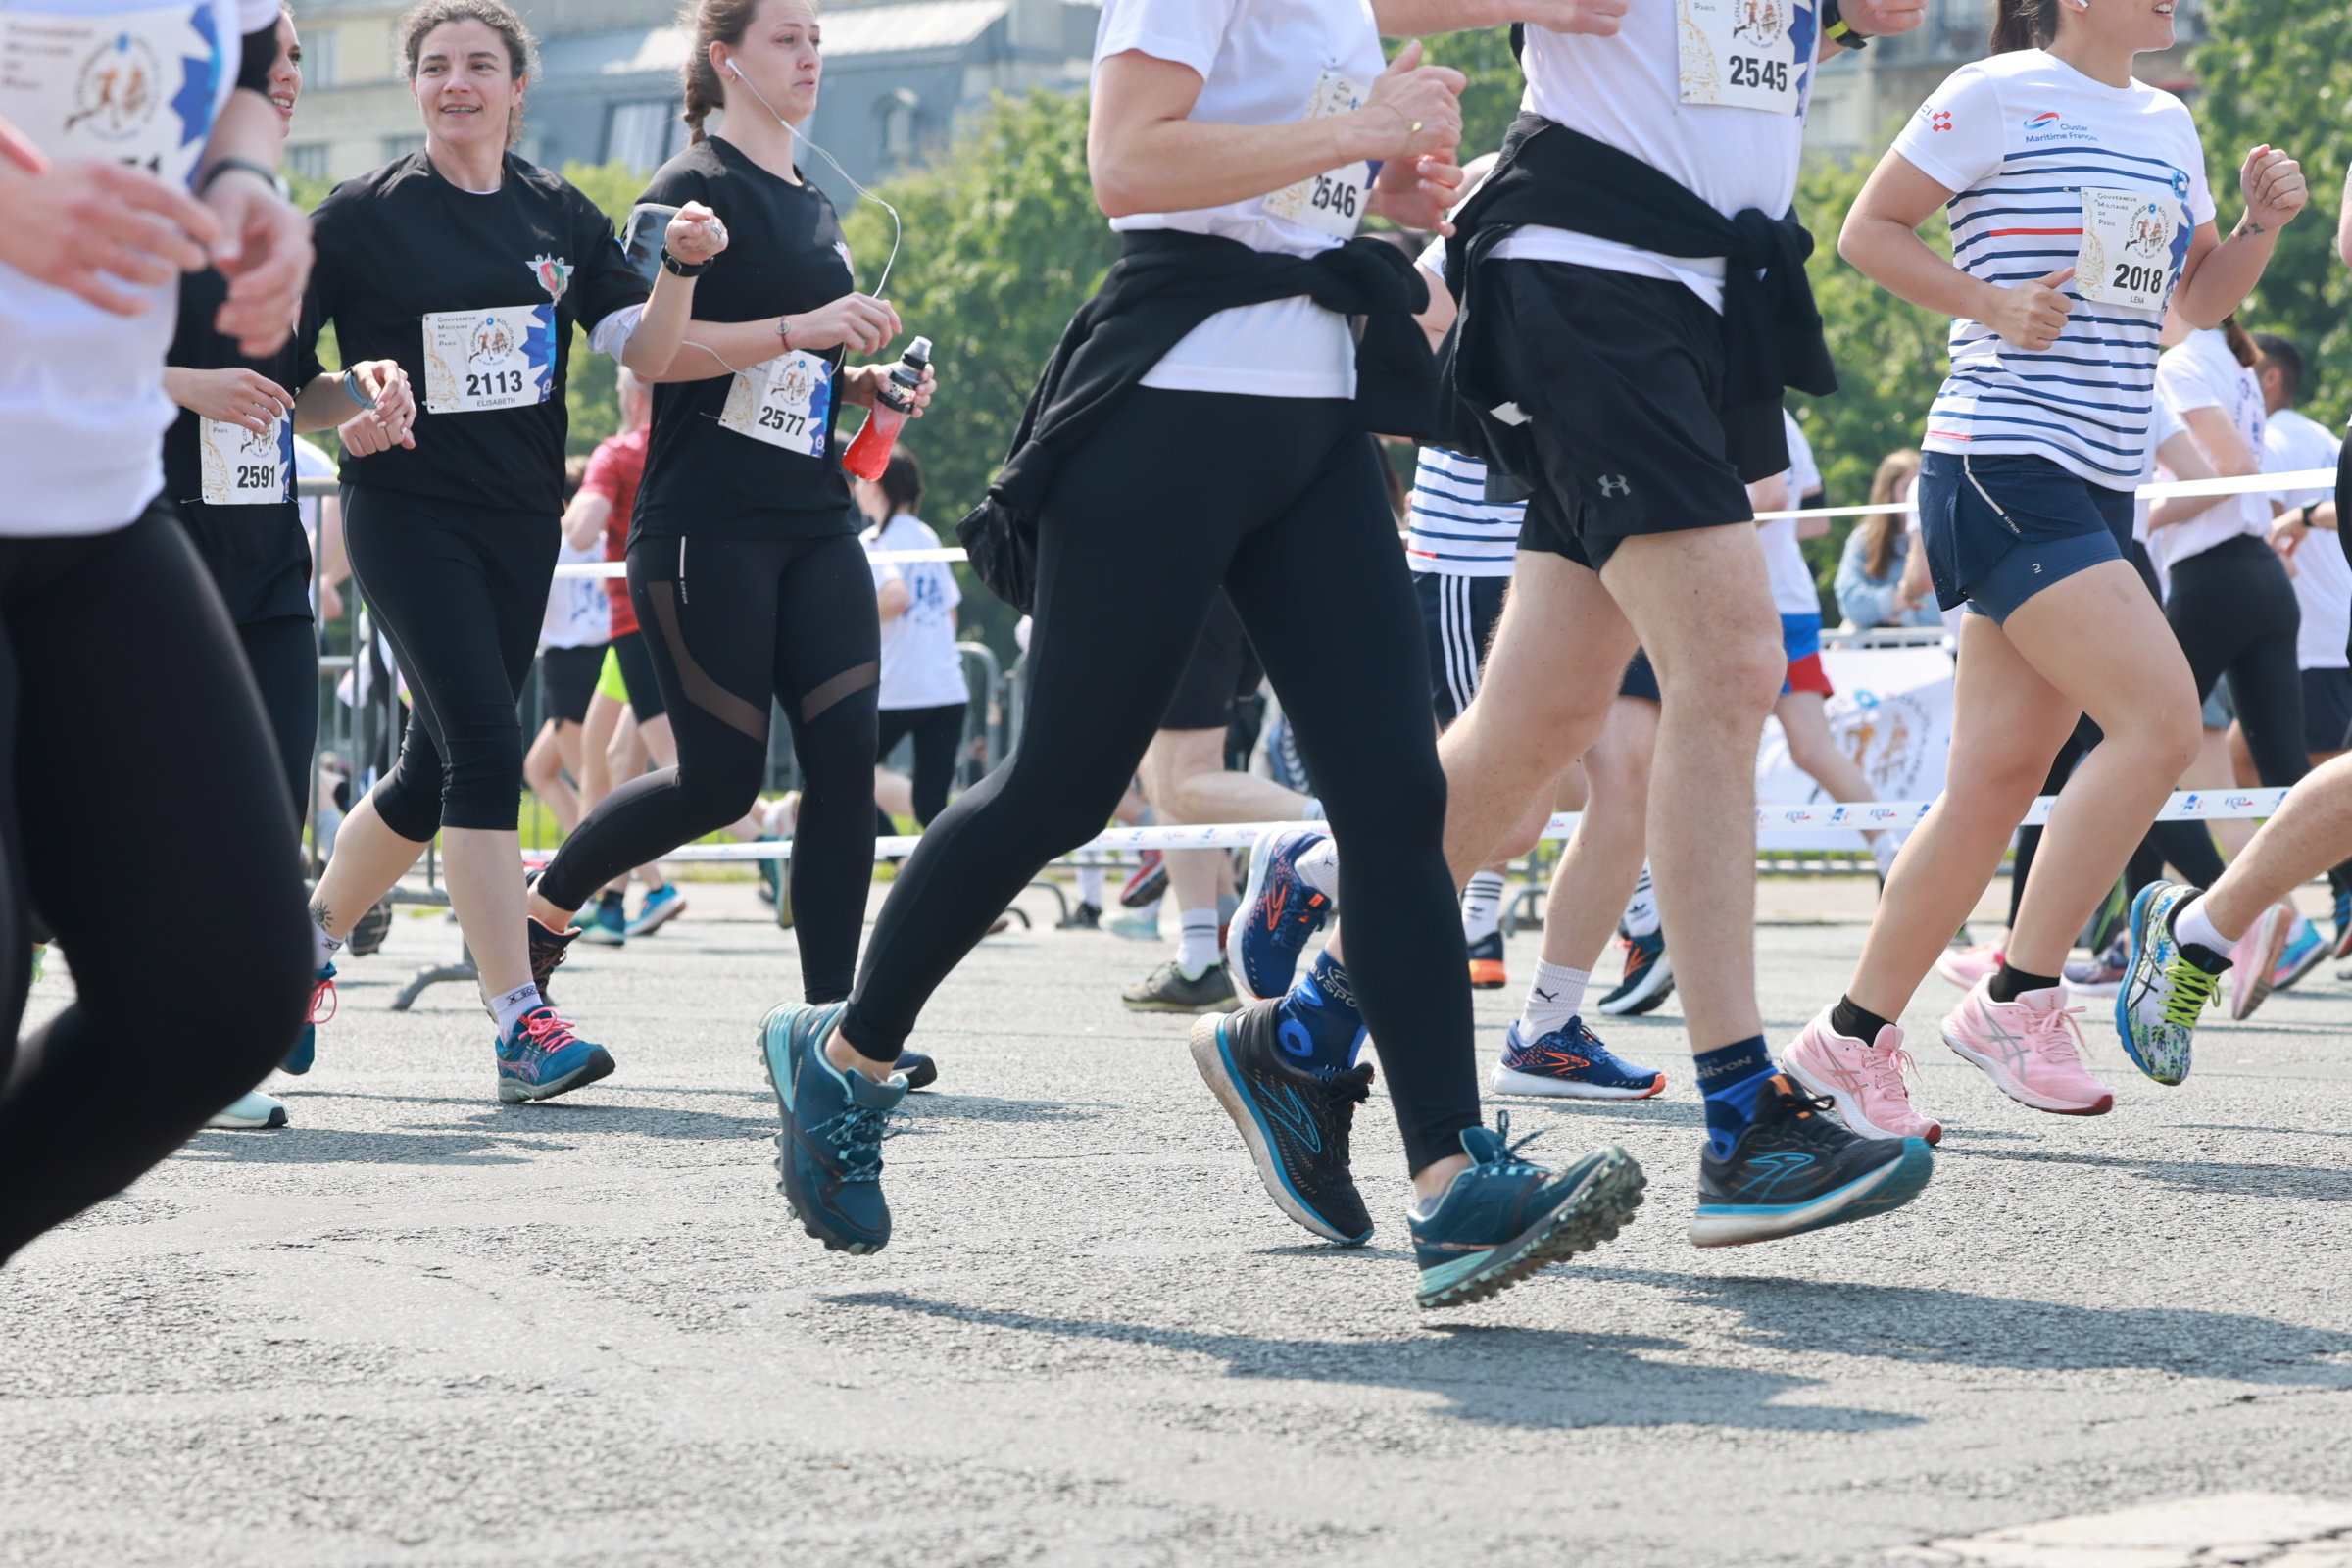 La course à pied figure parmi les activités physiques privilégiées des Français. LP/Philippe Lavieille